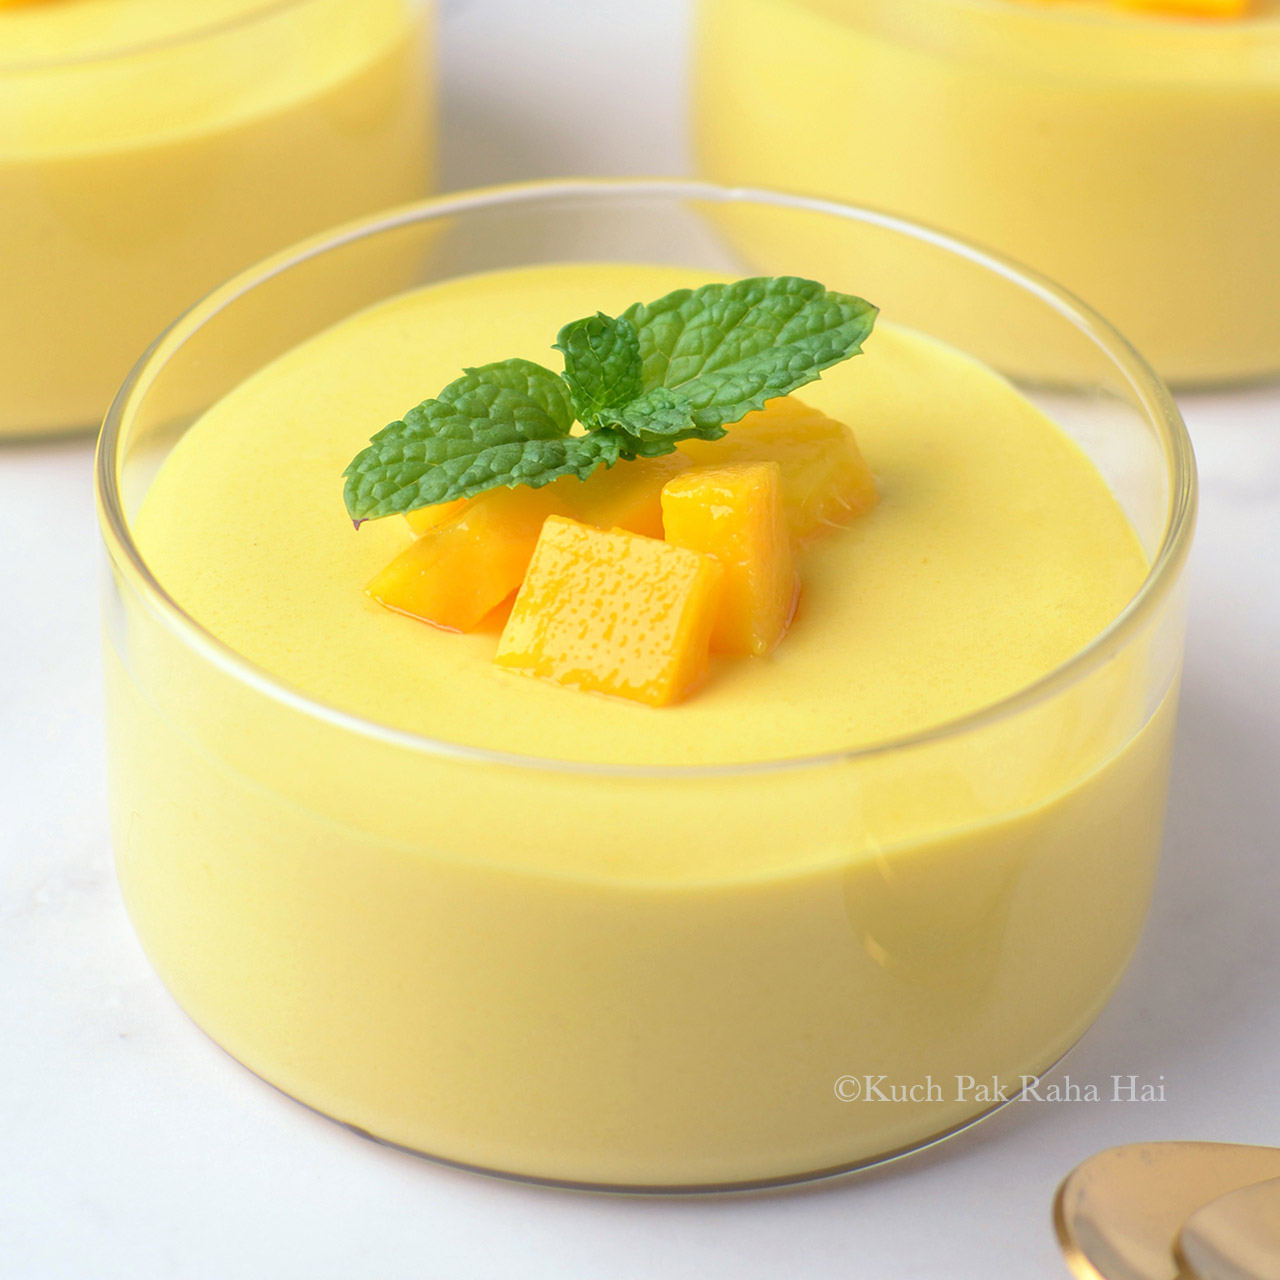 Mango mousse recipe without gelatin.